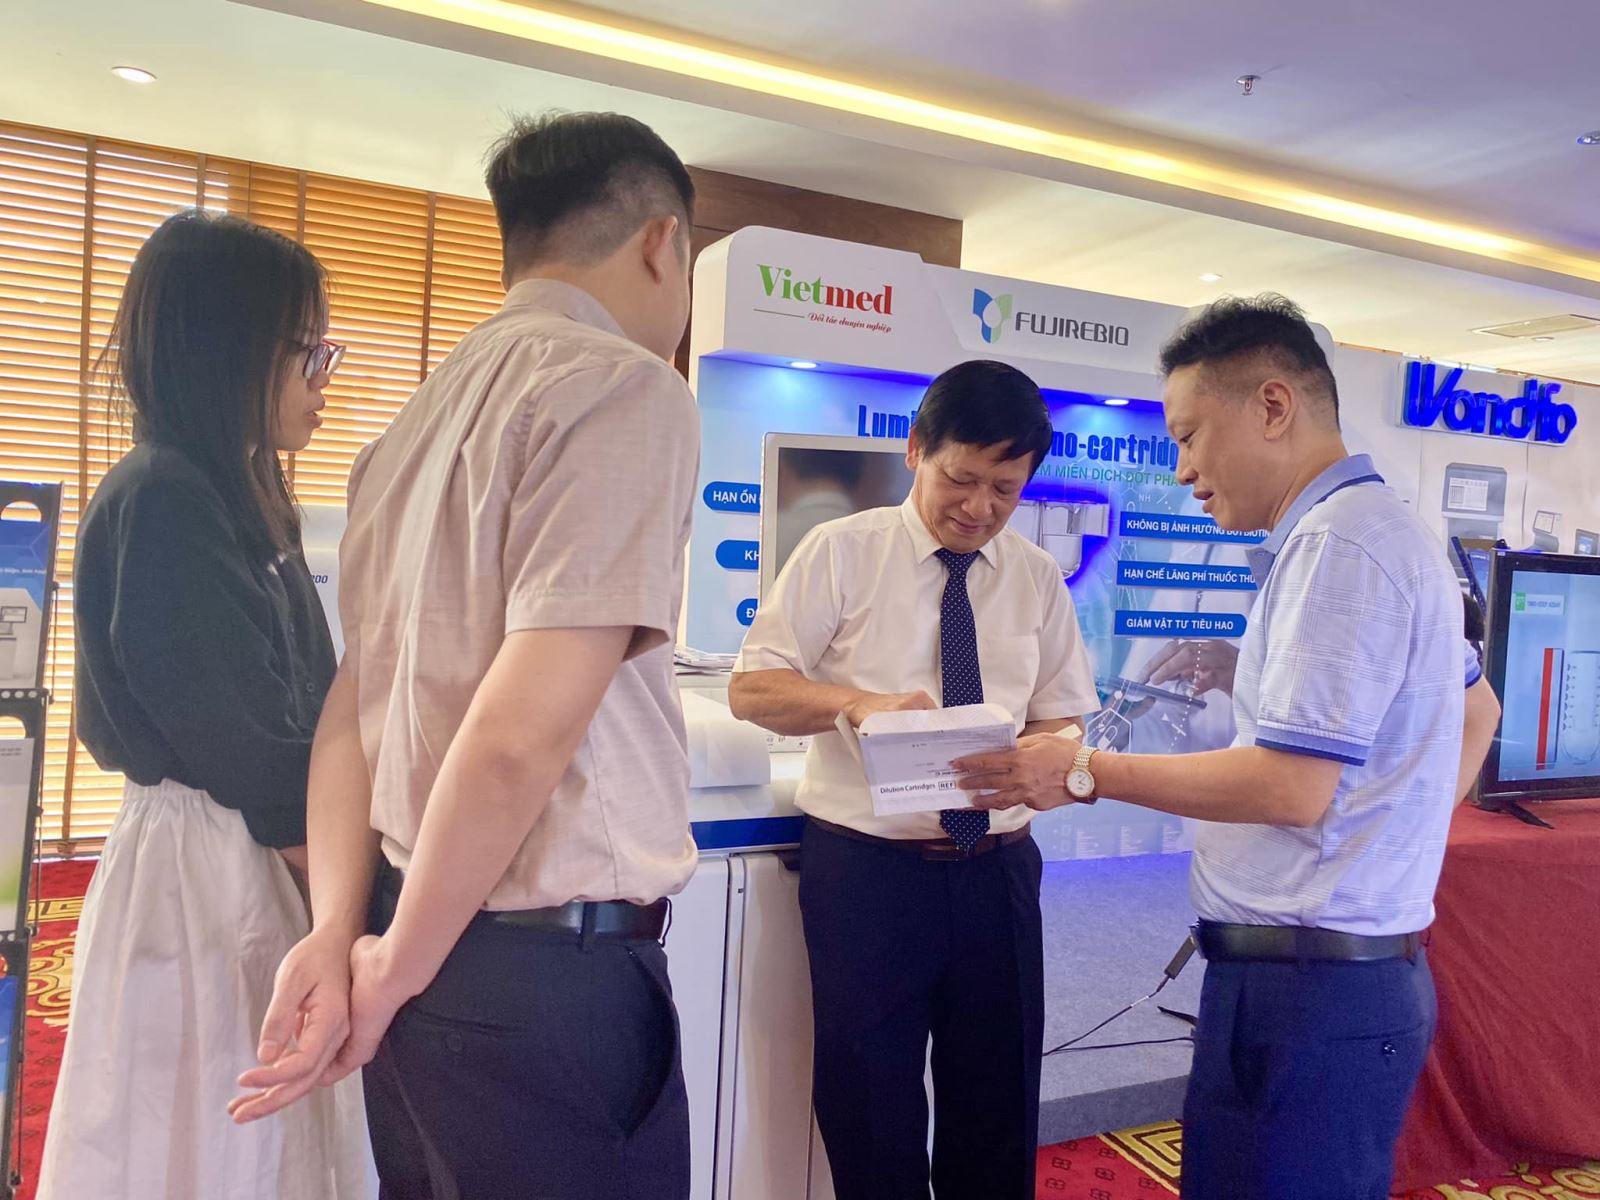 Vietmed hân hạnh cùng hãng Fujirebio là nhà tài trợ Đồng cho Hội nghị Khoa học lần thứ 25 Hội Hóa sinh Y học Hà Nội và các tỉnh phía Bắc